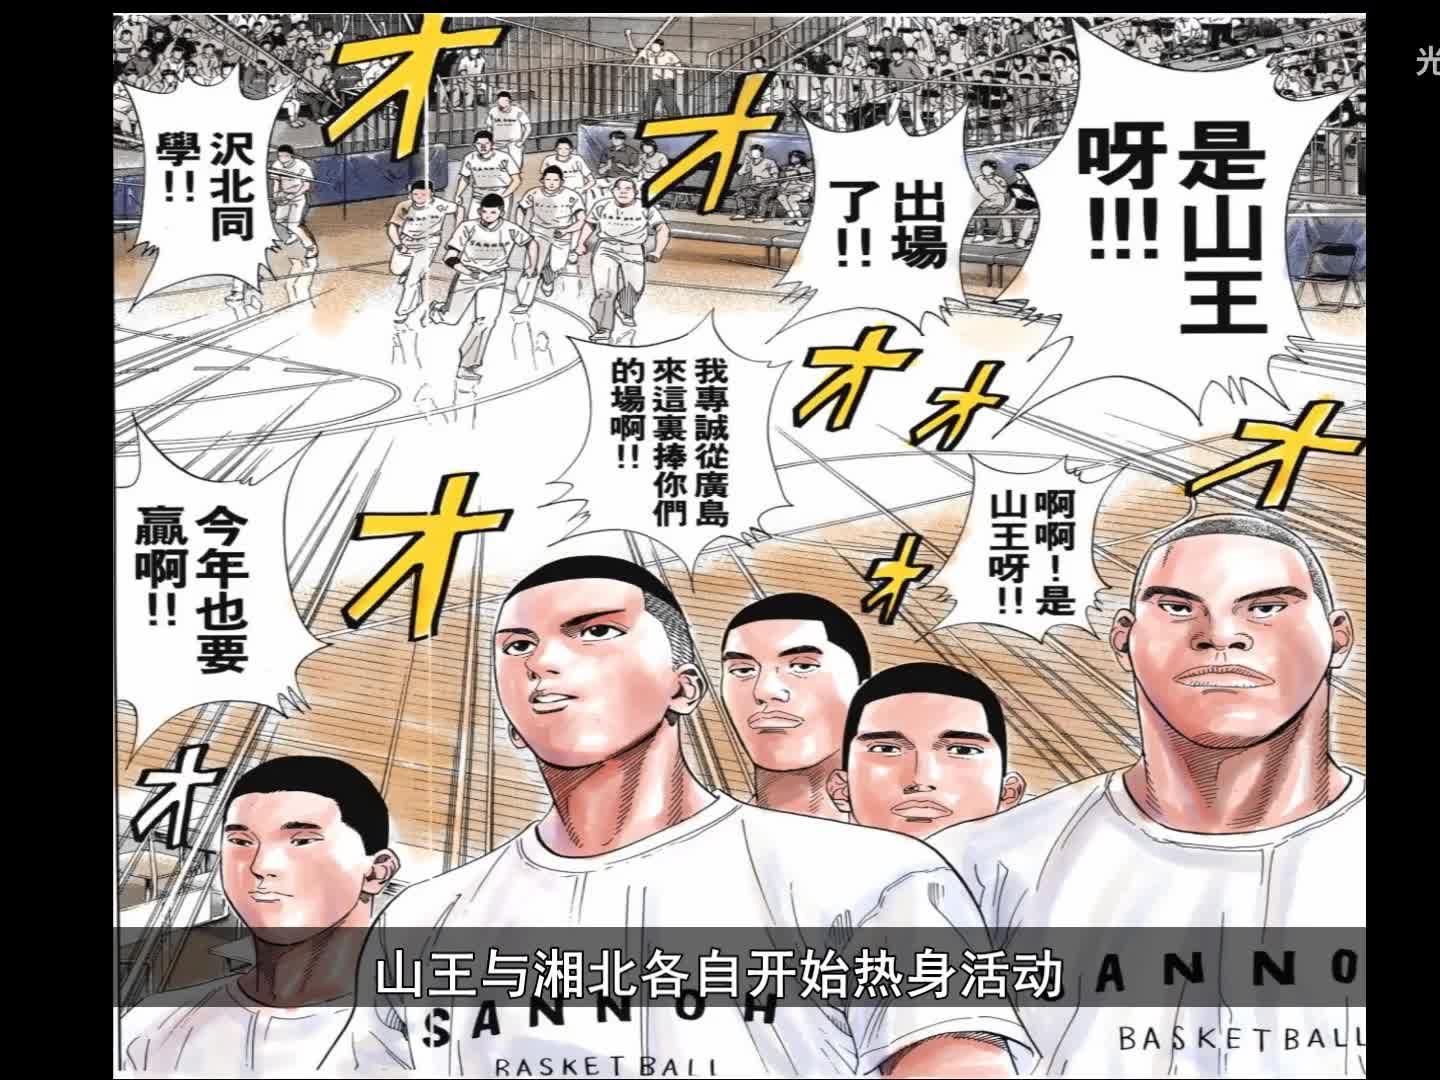 高清1080p 灌篮高手 全国大赛篇04 湘北vs山王 西瓜视频